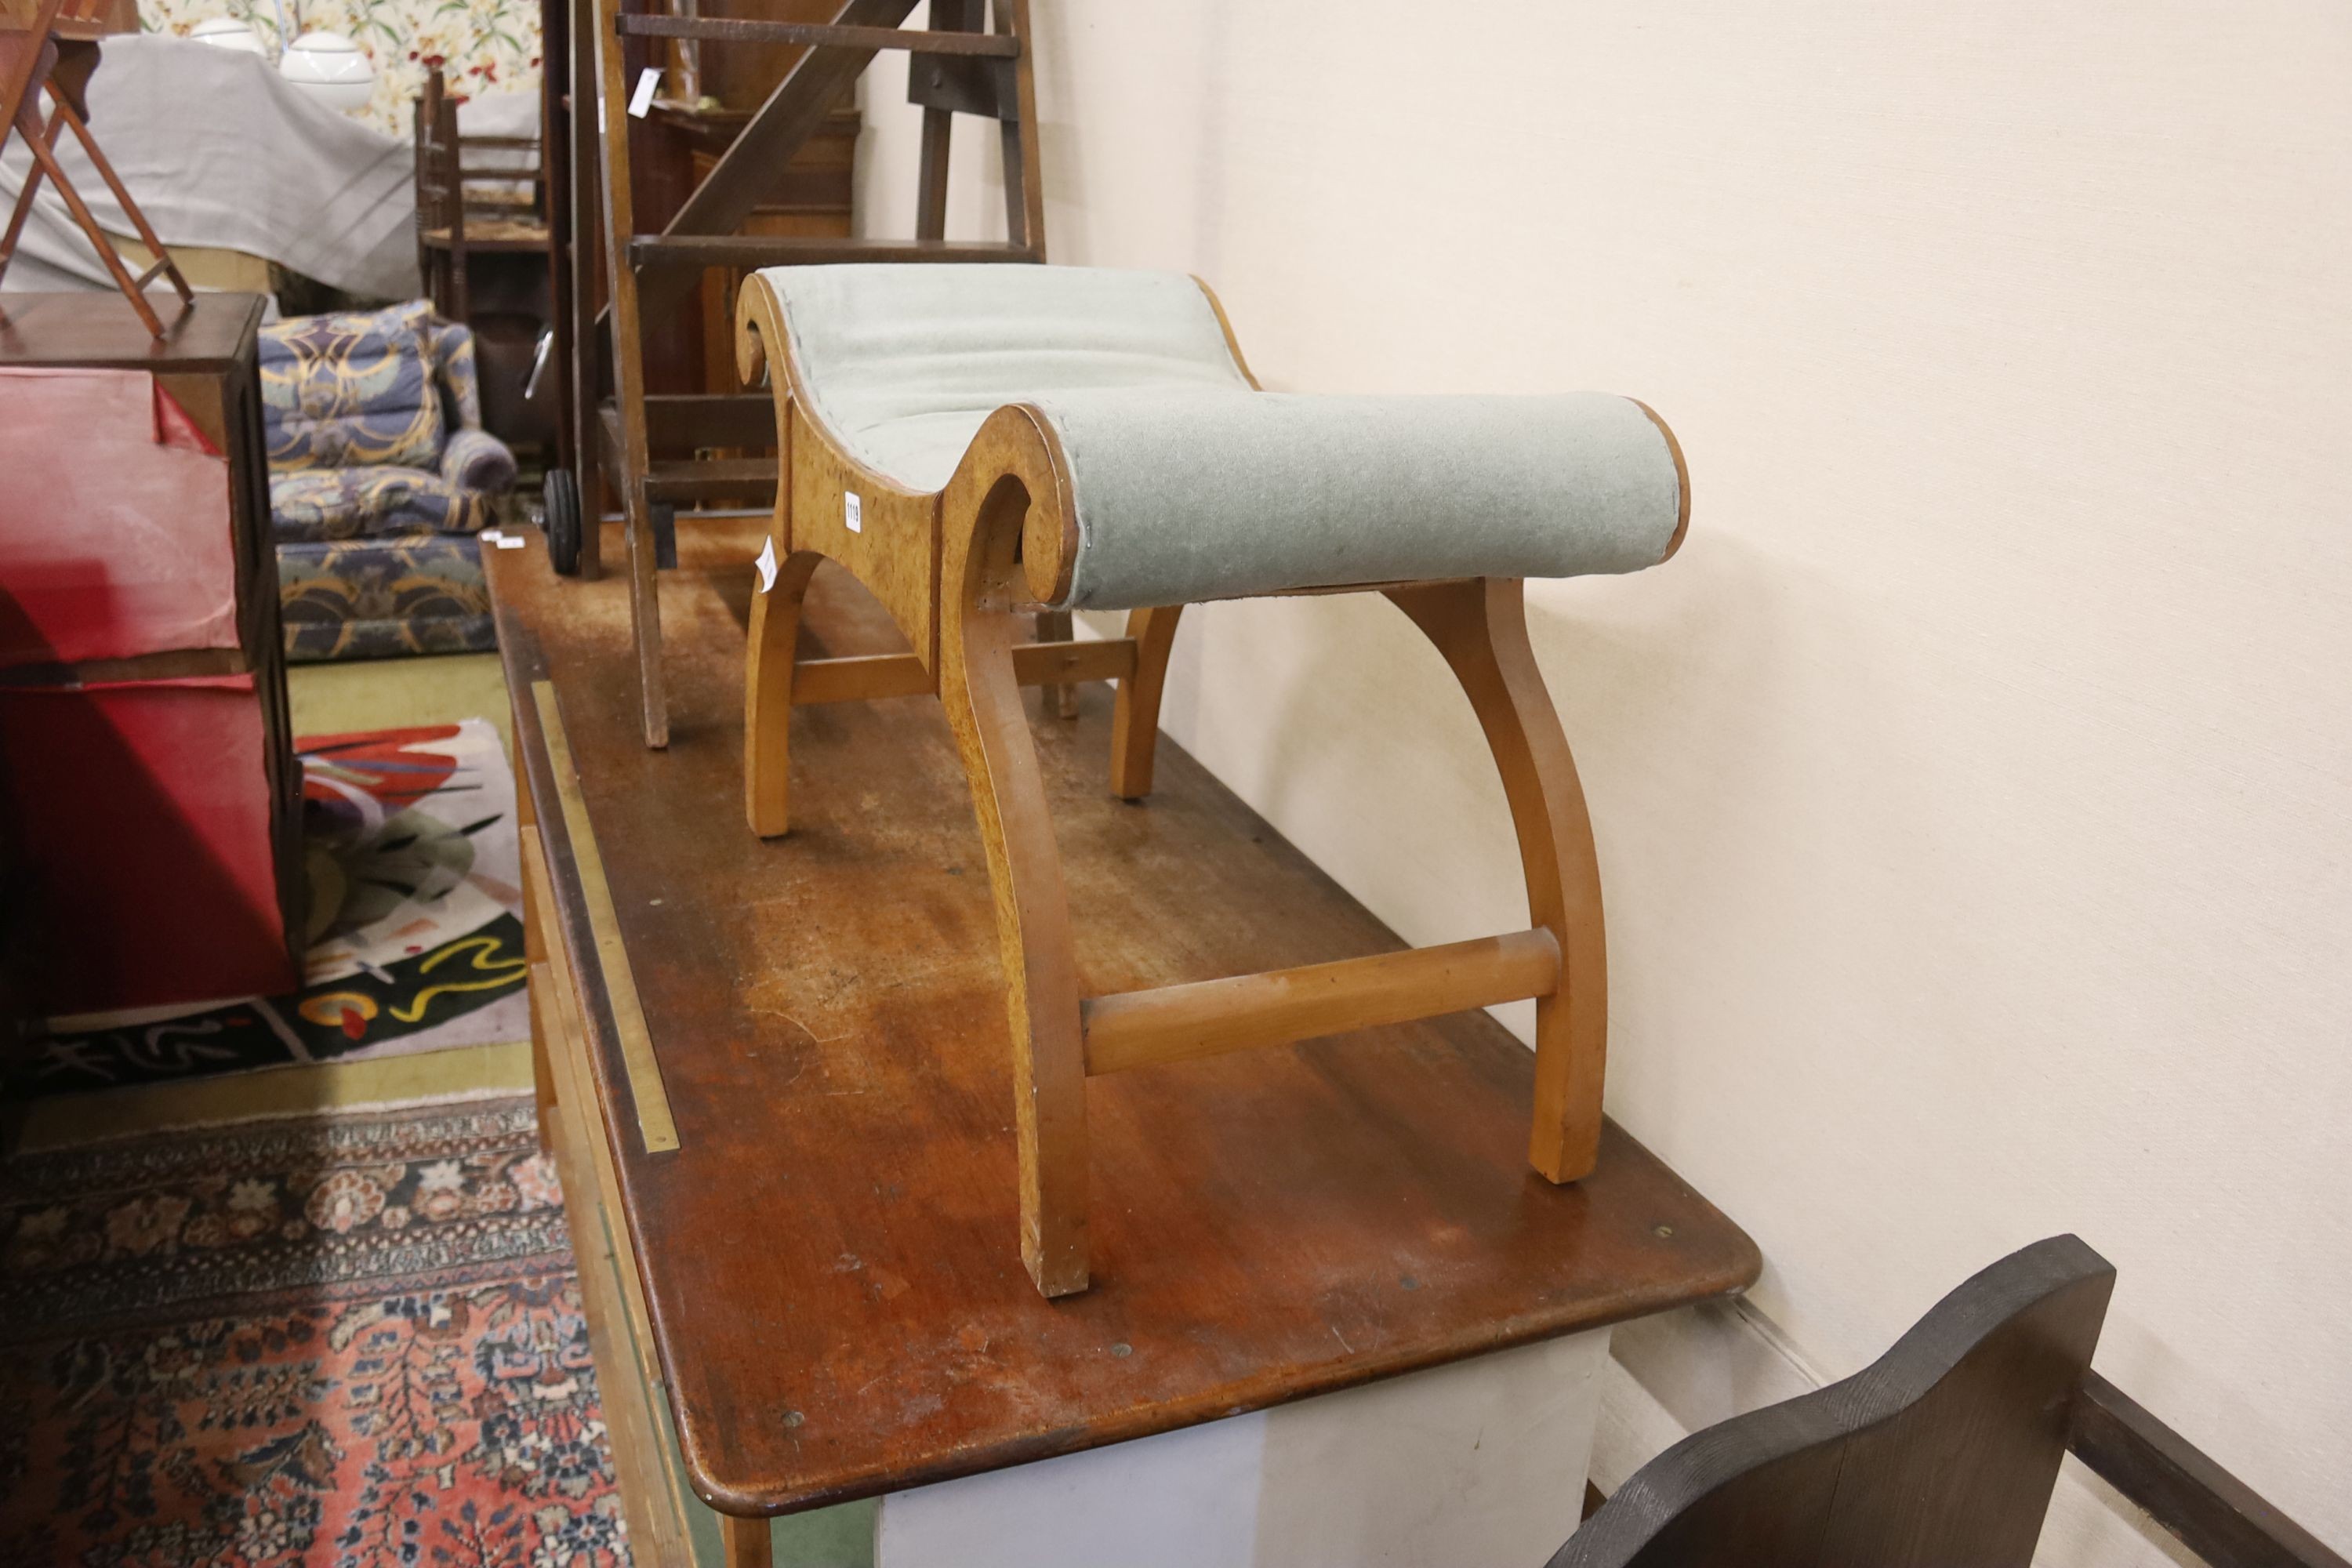 A Regency style 'X' framed stool, length 69cm, depth 46cm, height 46cm